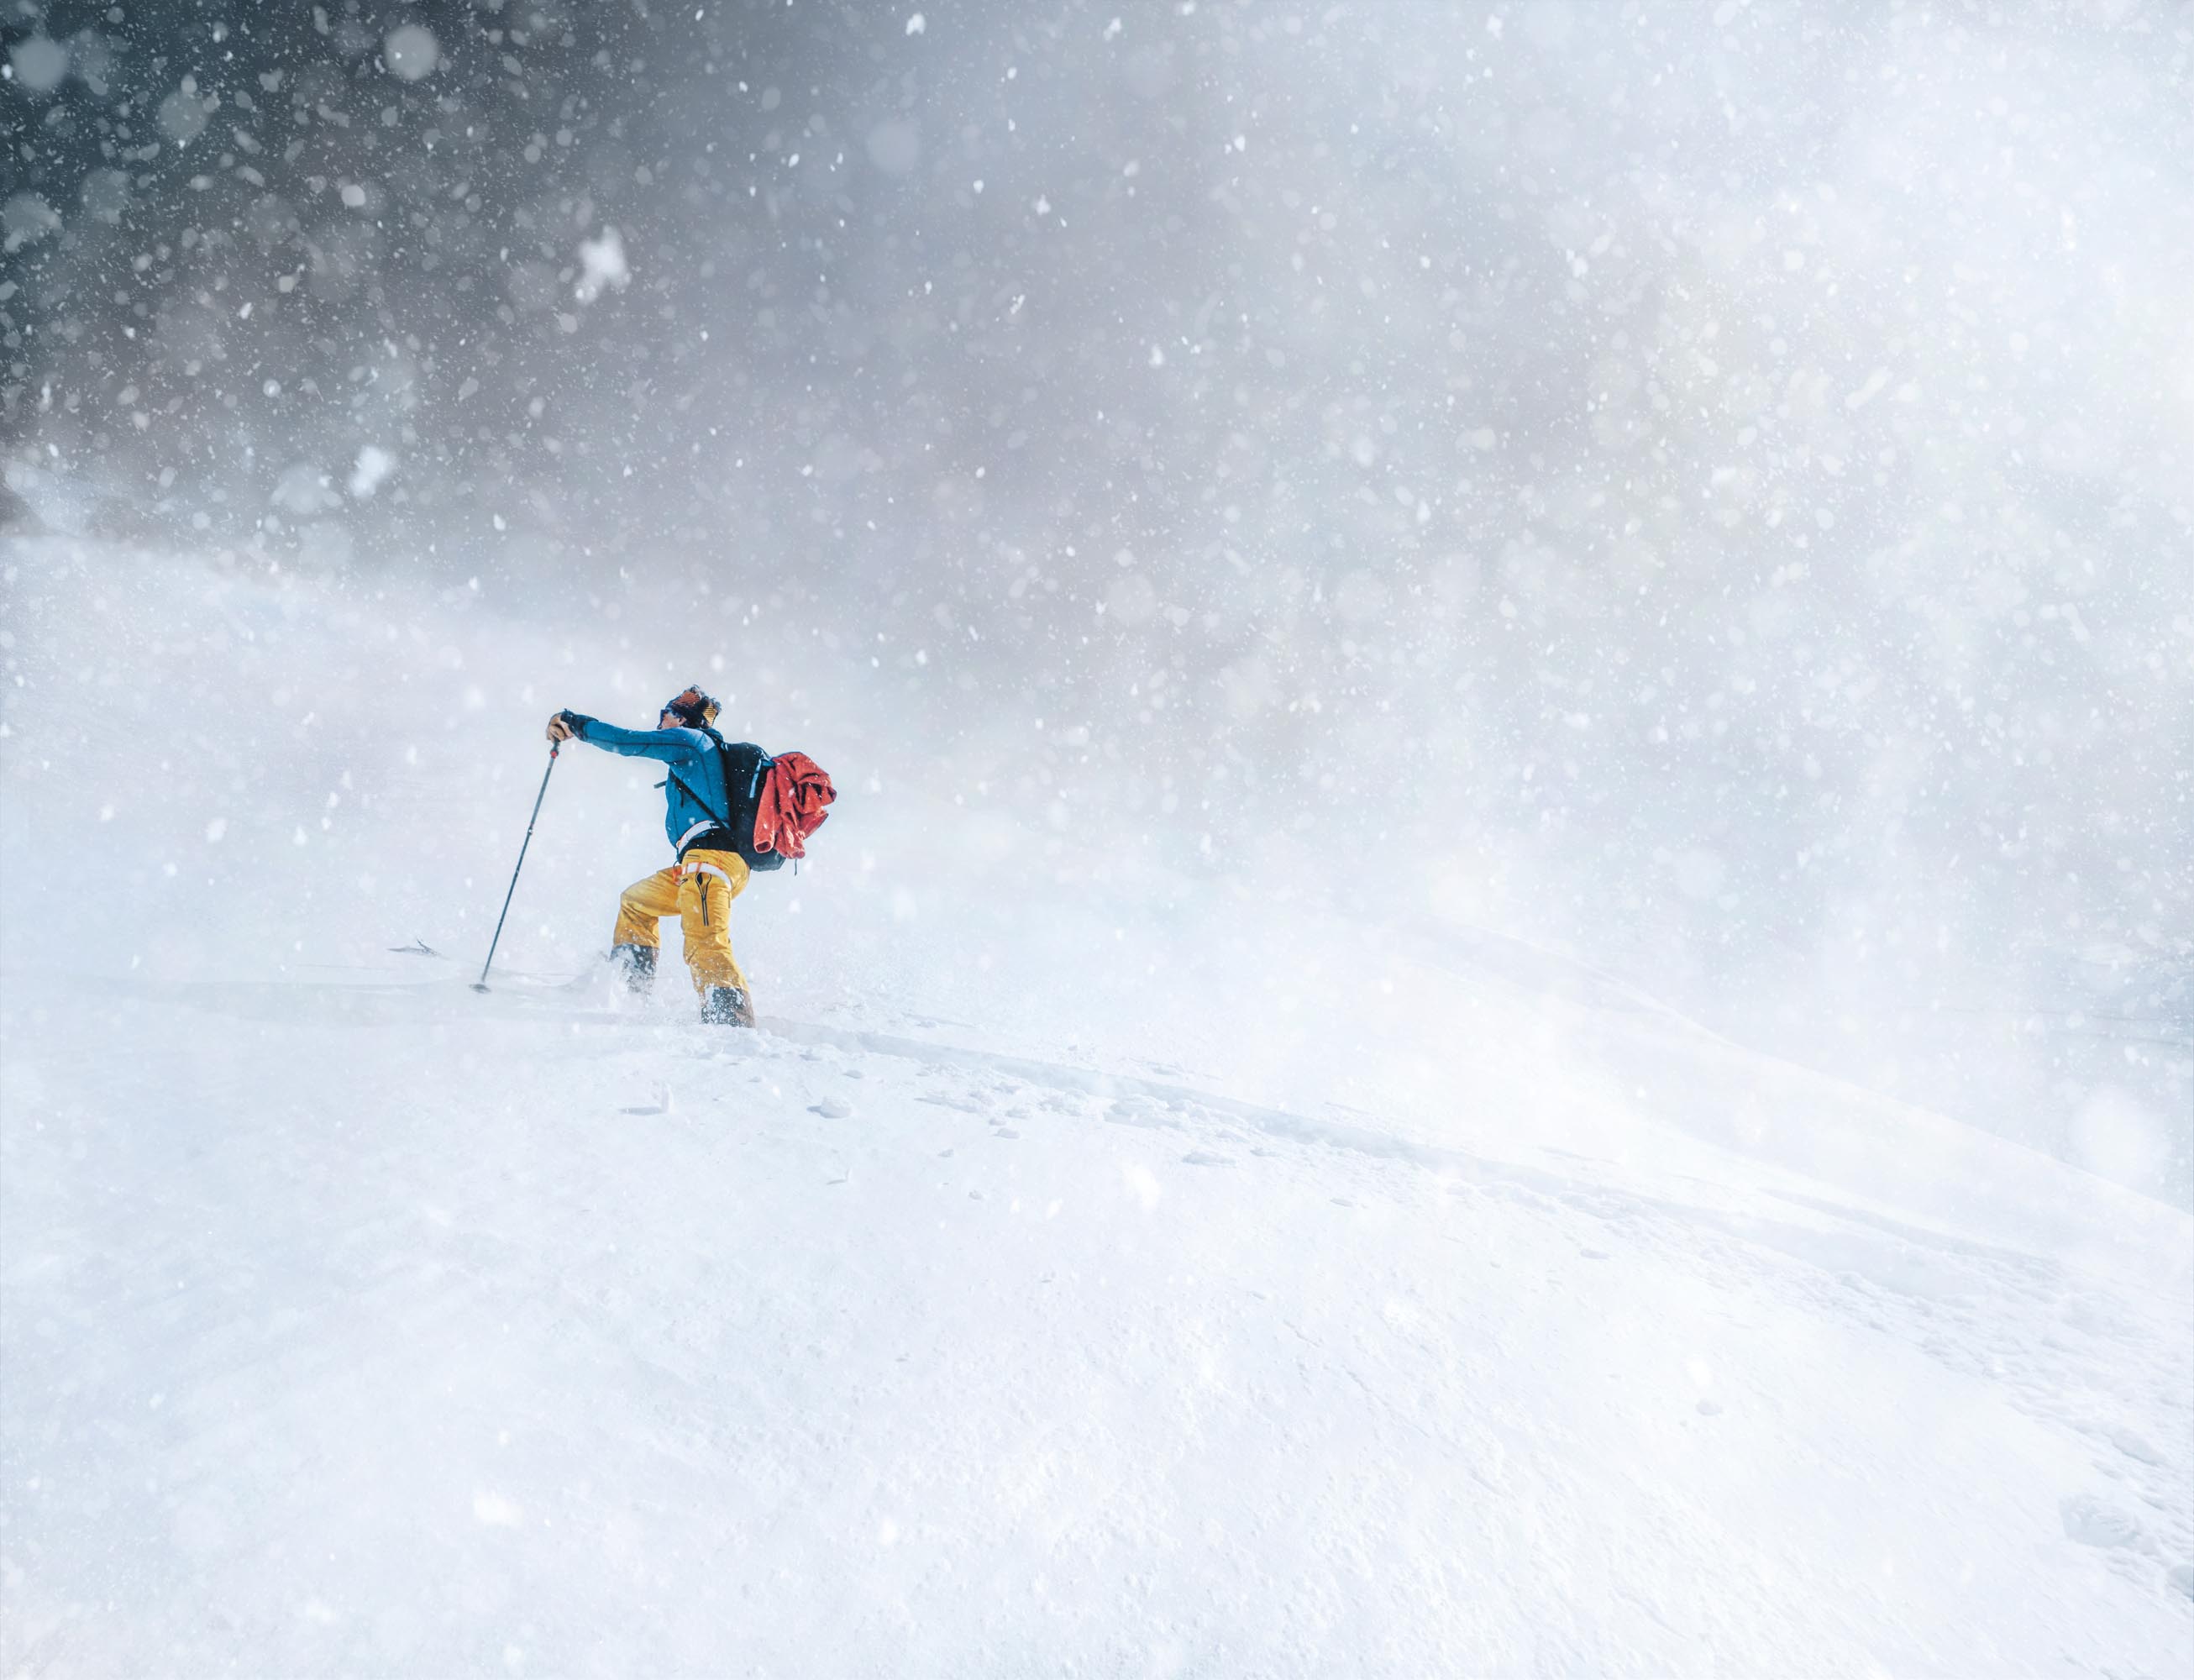 Chris Semmel im Whiteout im Schneesturm.